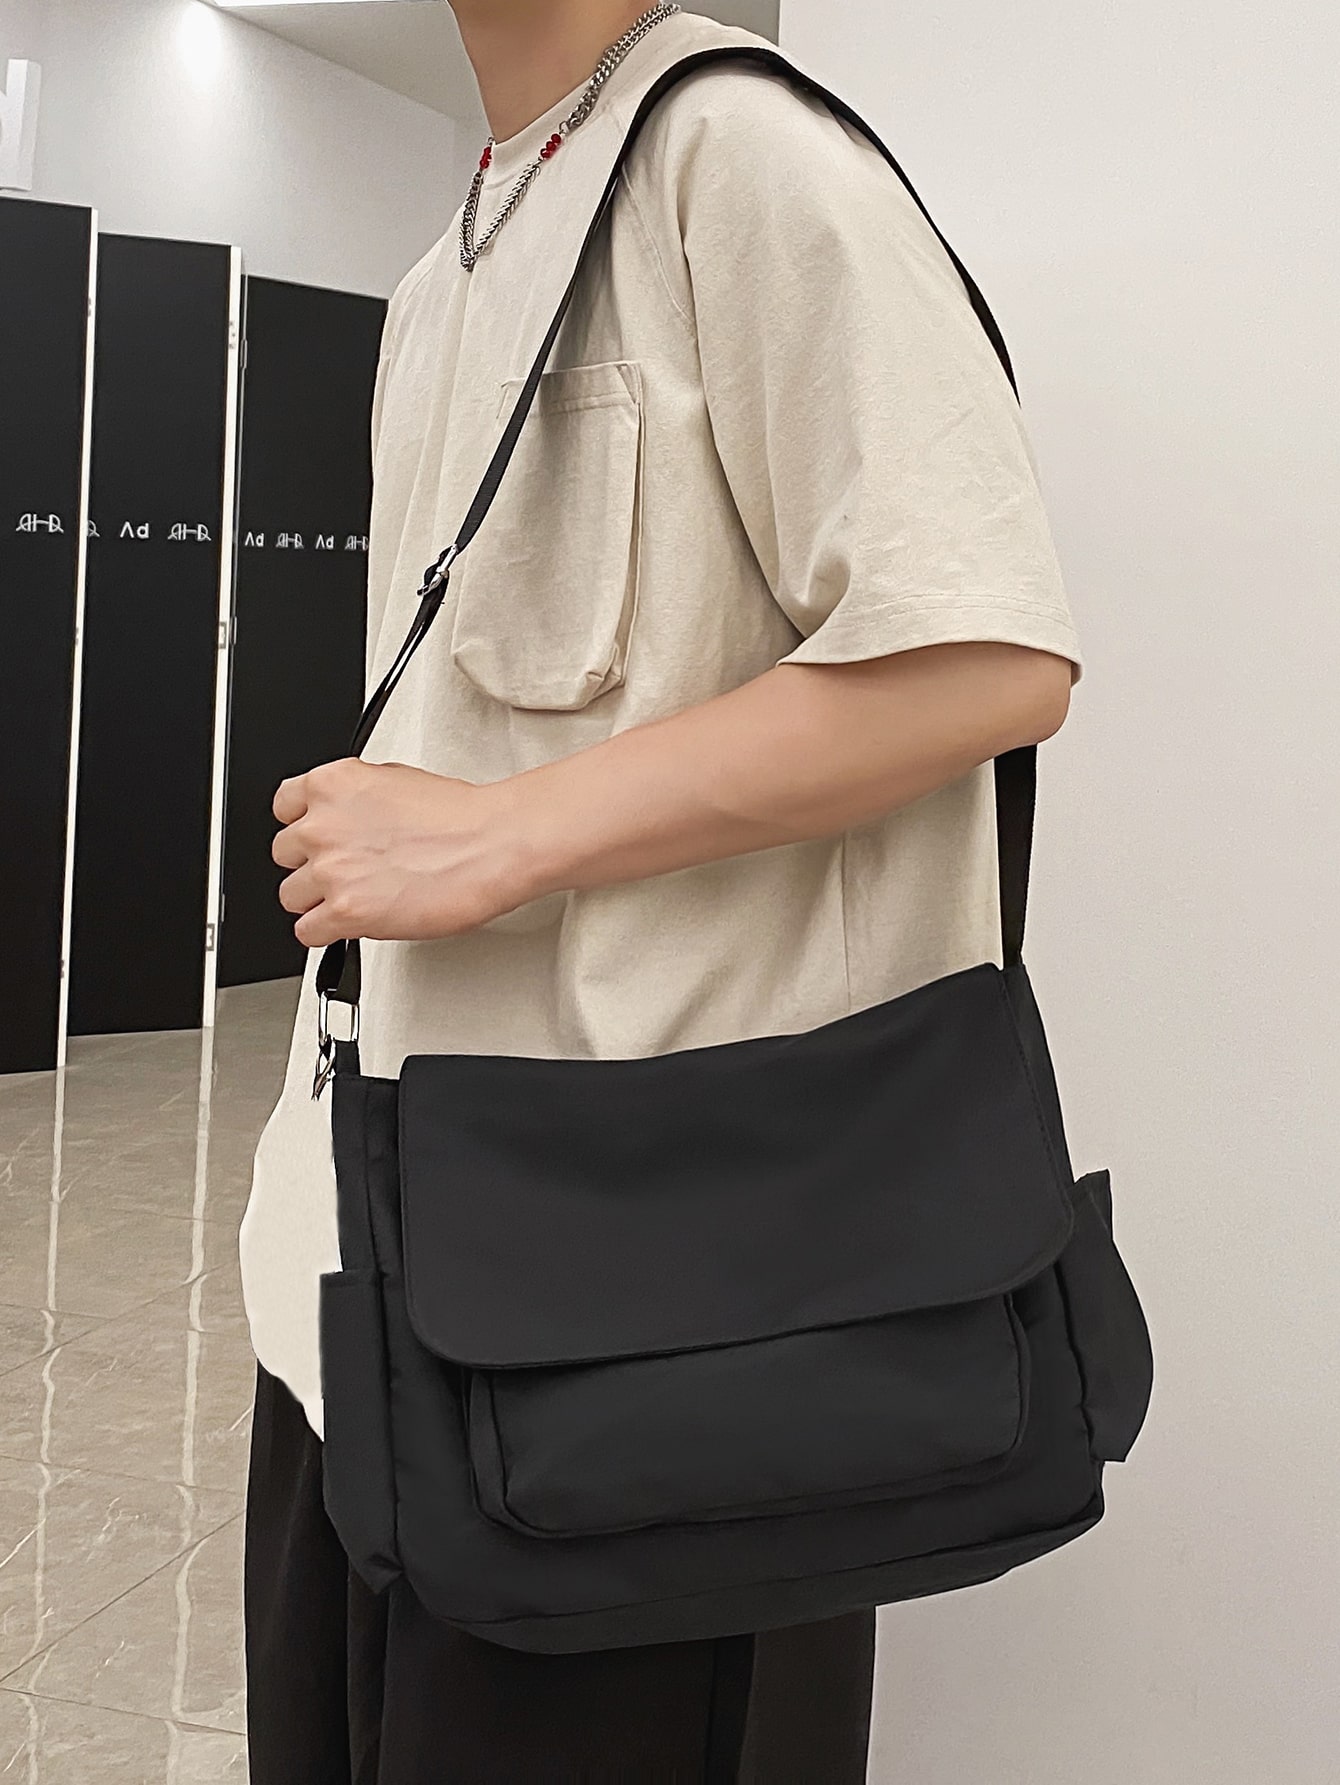 винтажный треугольный рюкзак aloha tiki рюкзак слинг canfeng дорожный походный рюкзак веревочная сумка через плечо 1 шт. Мужская нагрудная сумка в стиле Ins, черный